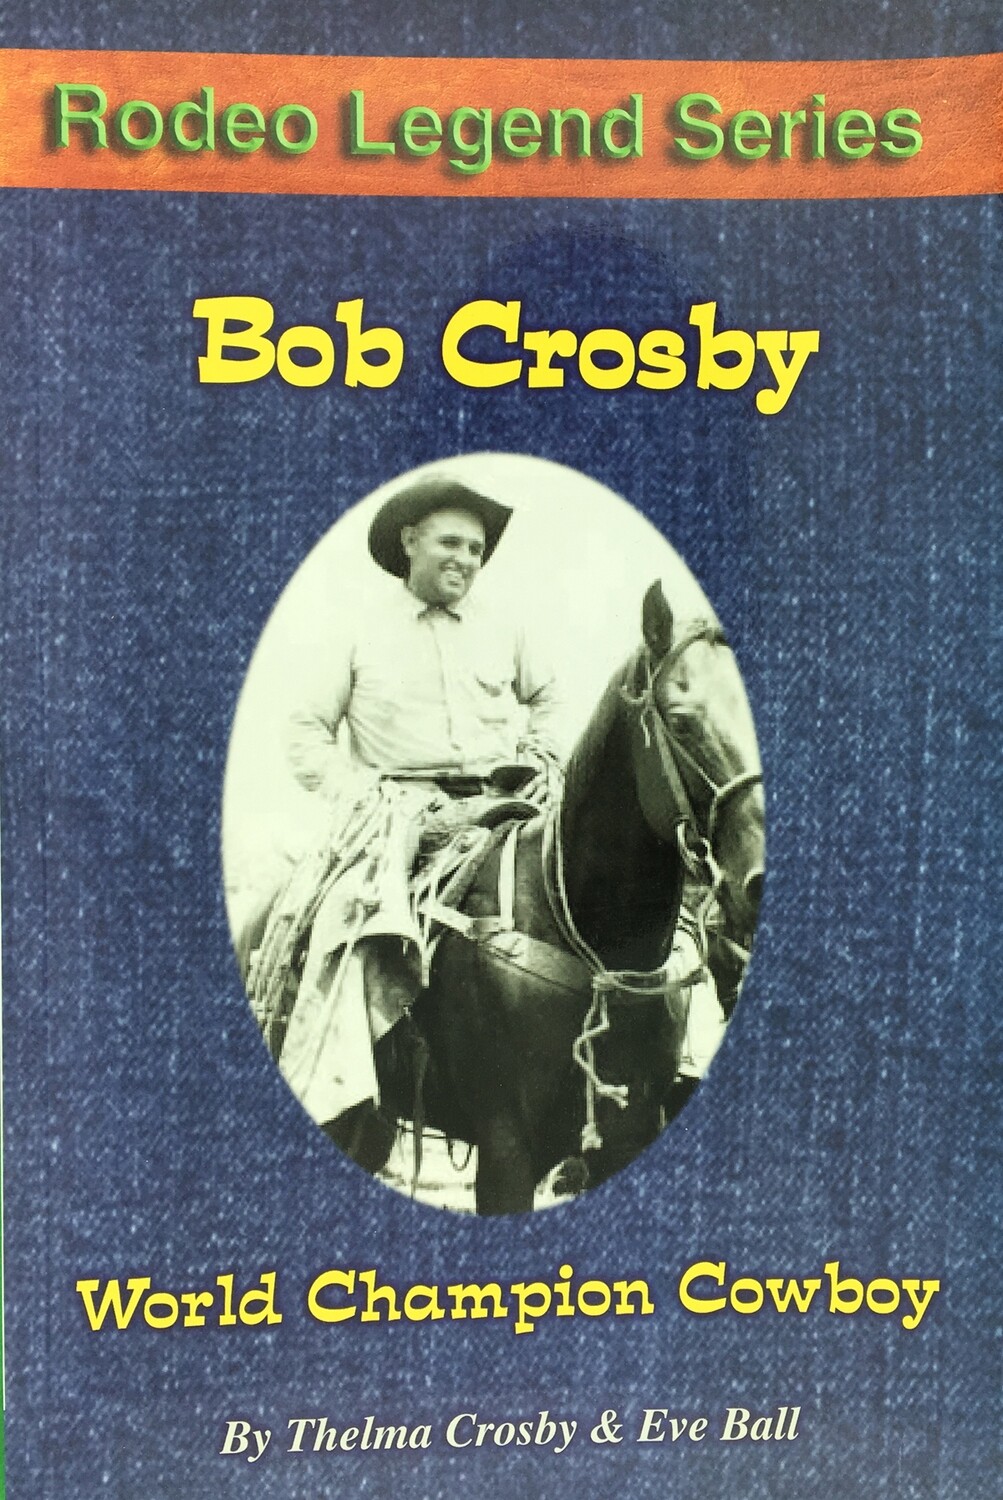 Bob Crosby - World Champion Cowboy